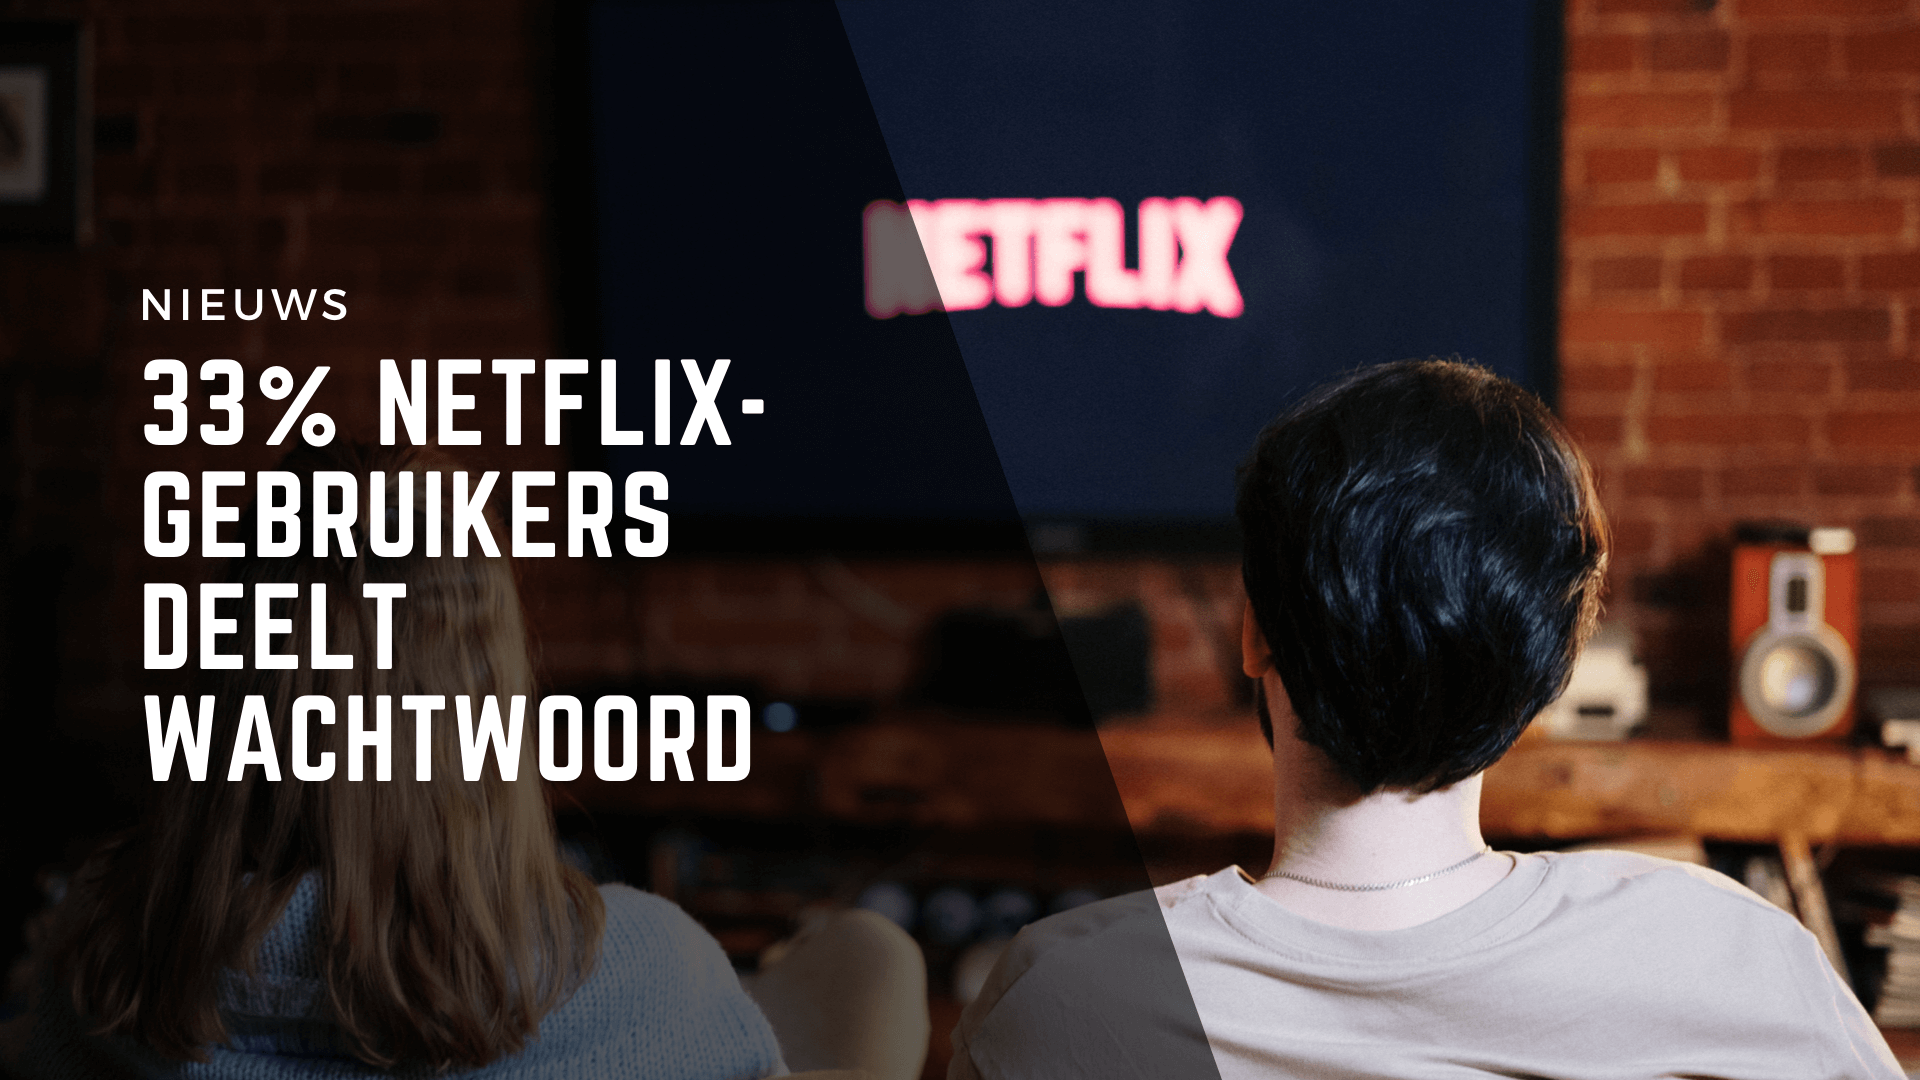 Netflix-gebruikers deelt wachtwoord